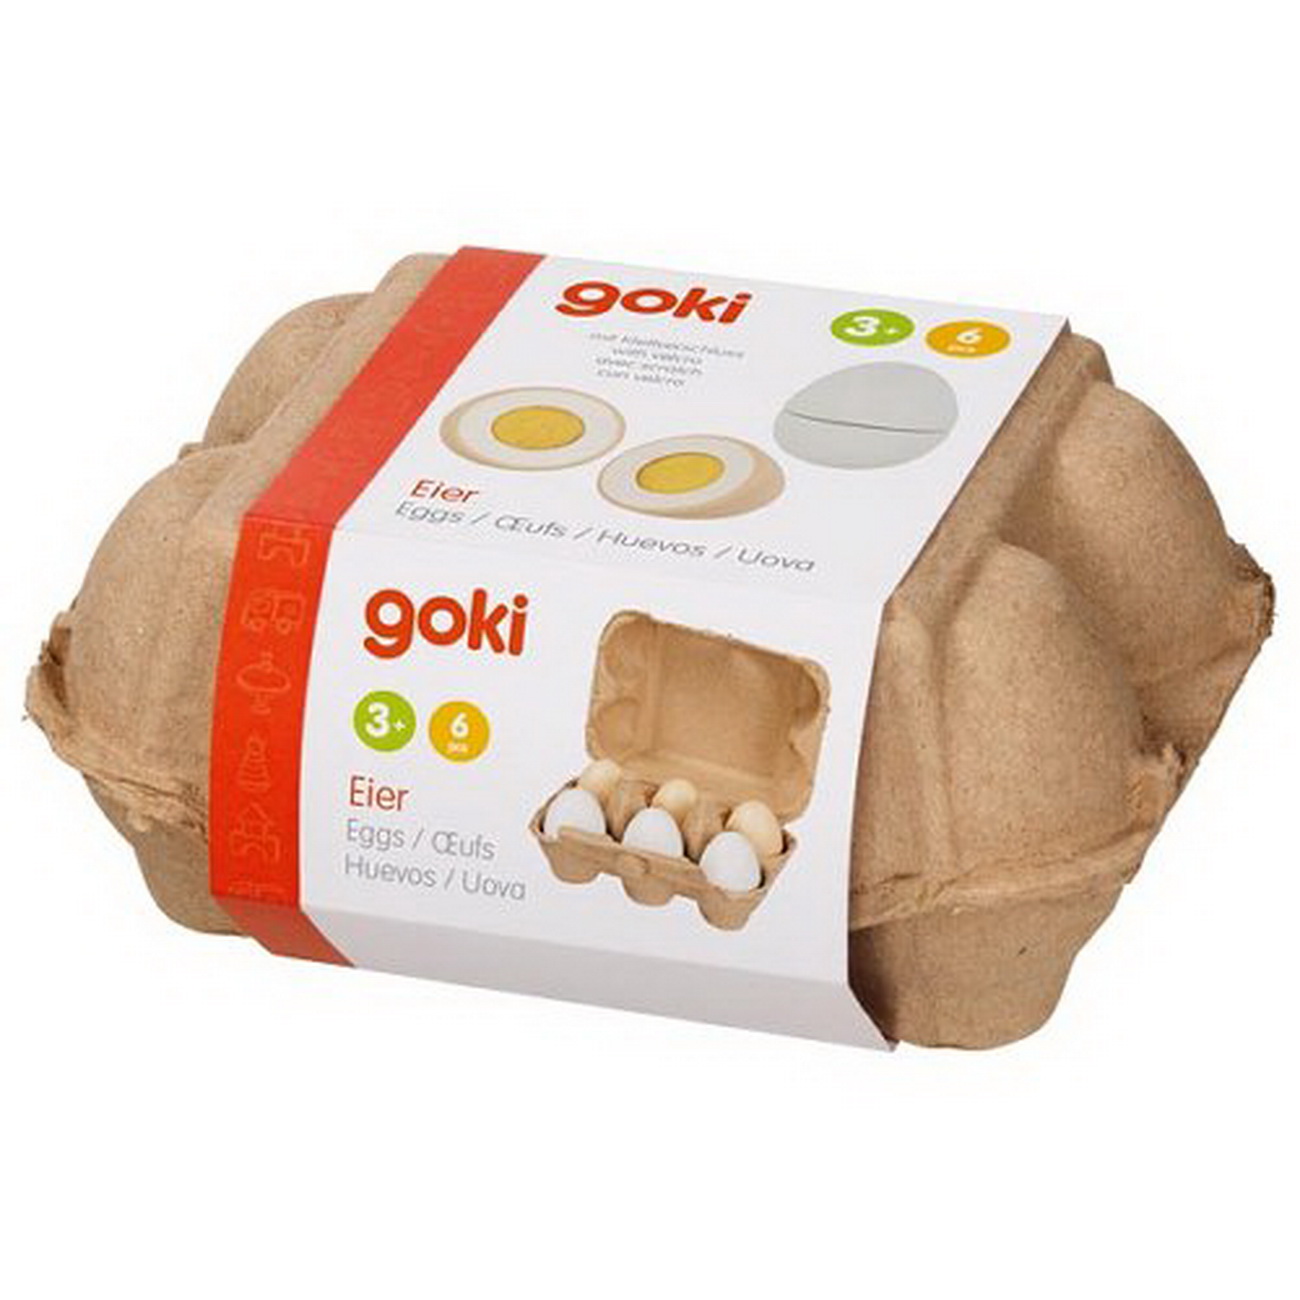 Eier mit Klettverbindung (goki 51511)